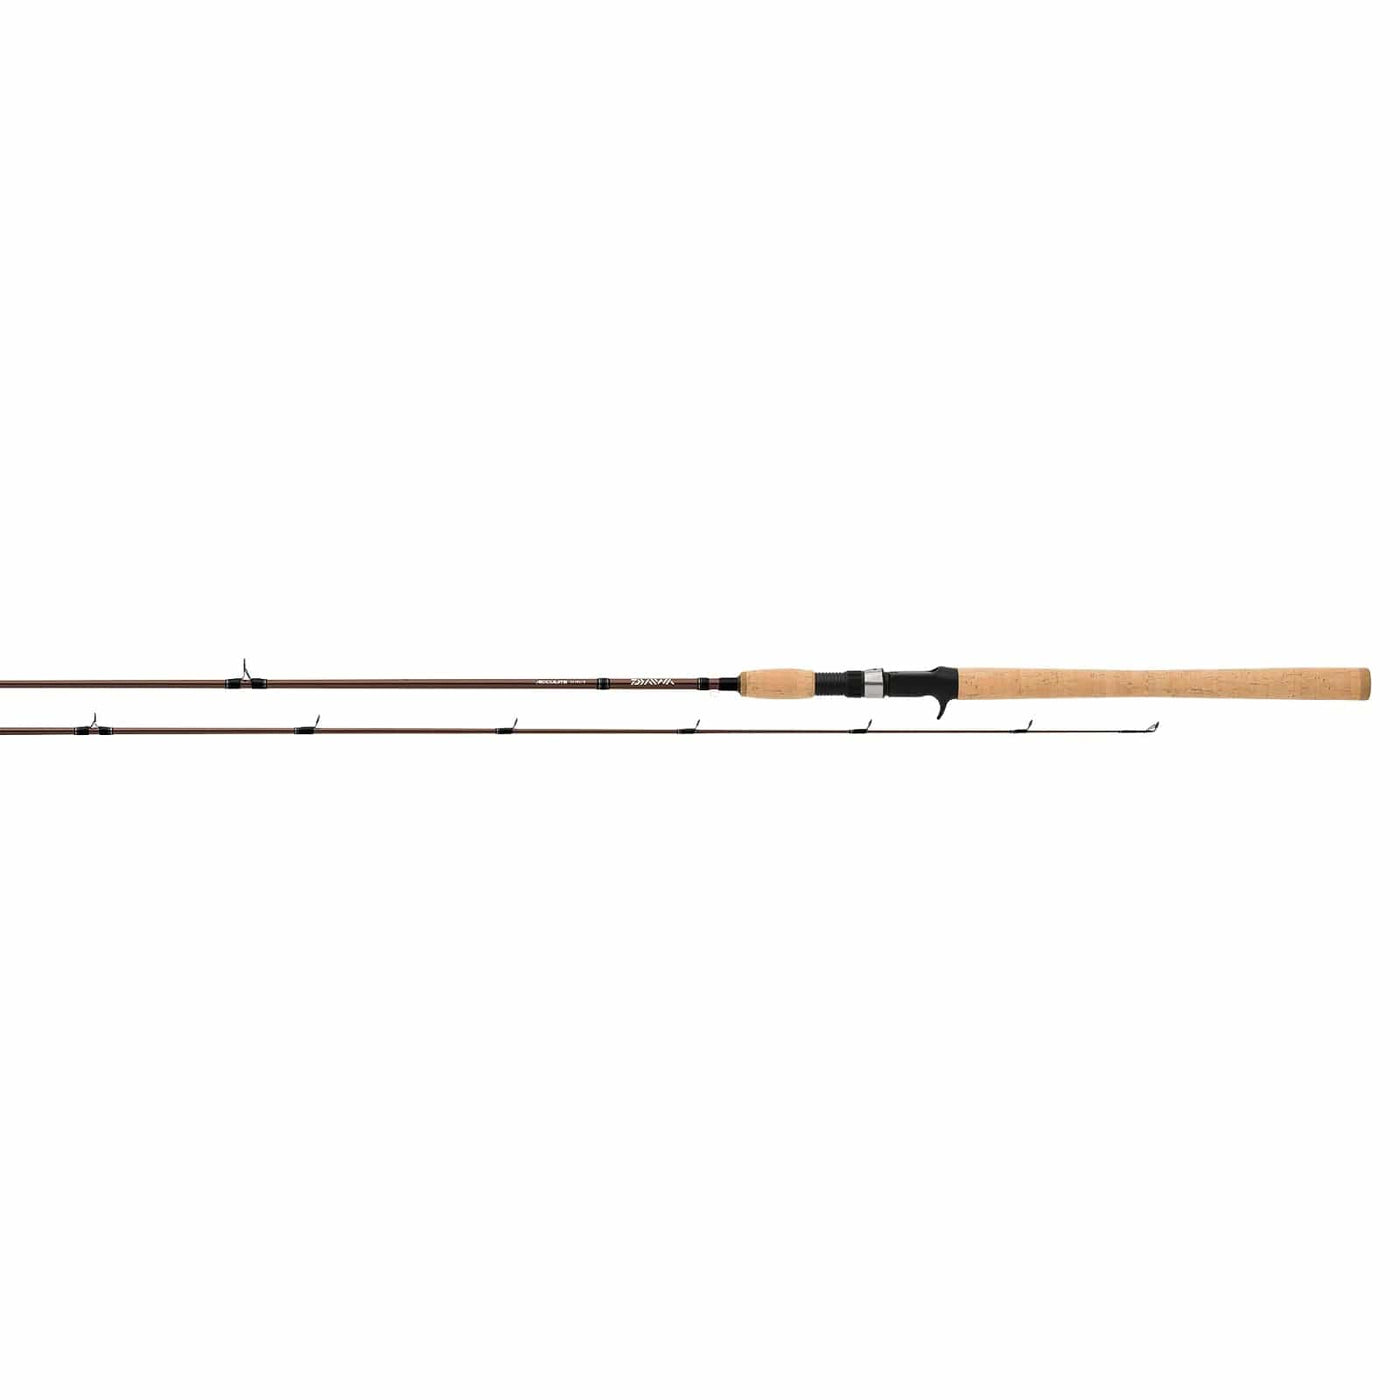 Daiwa Daiwa Acculite Spinning Rod ACLT902MLFS 9 ft 2 pc Fishing